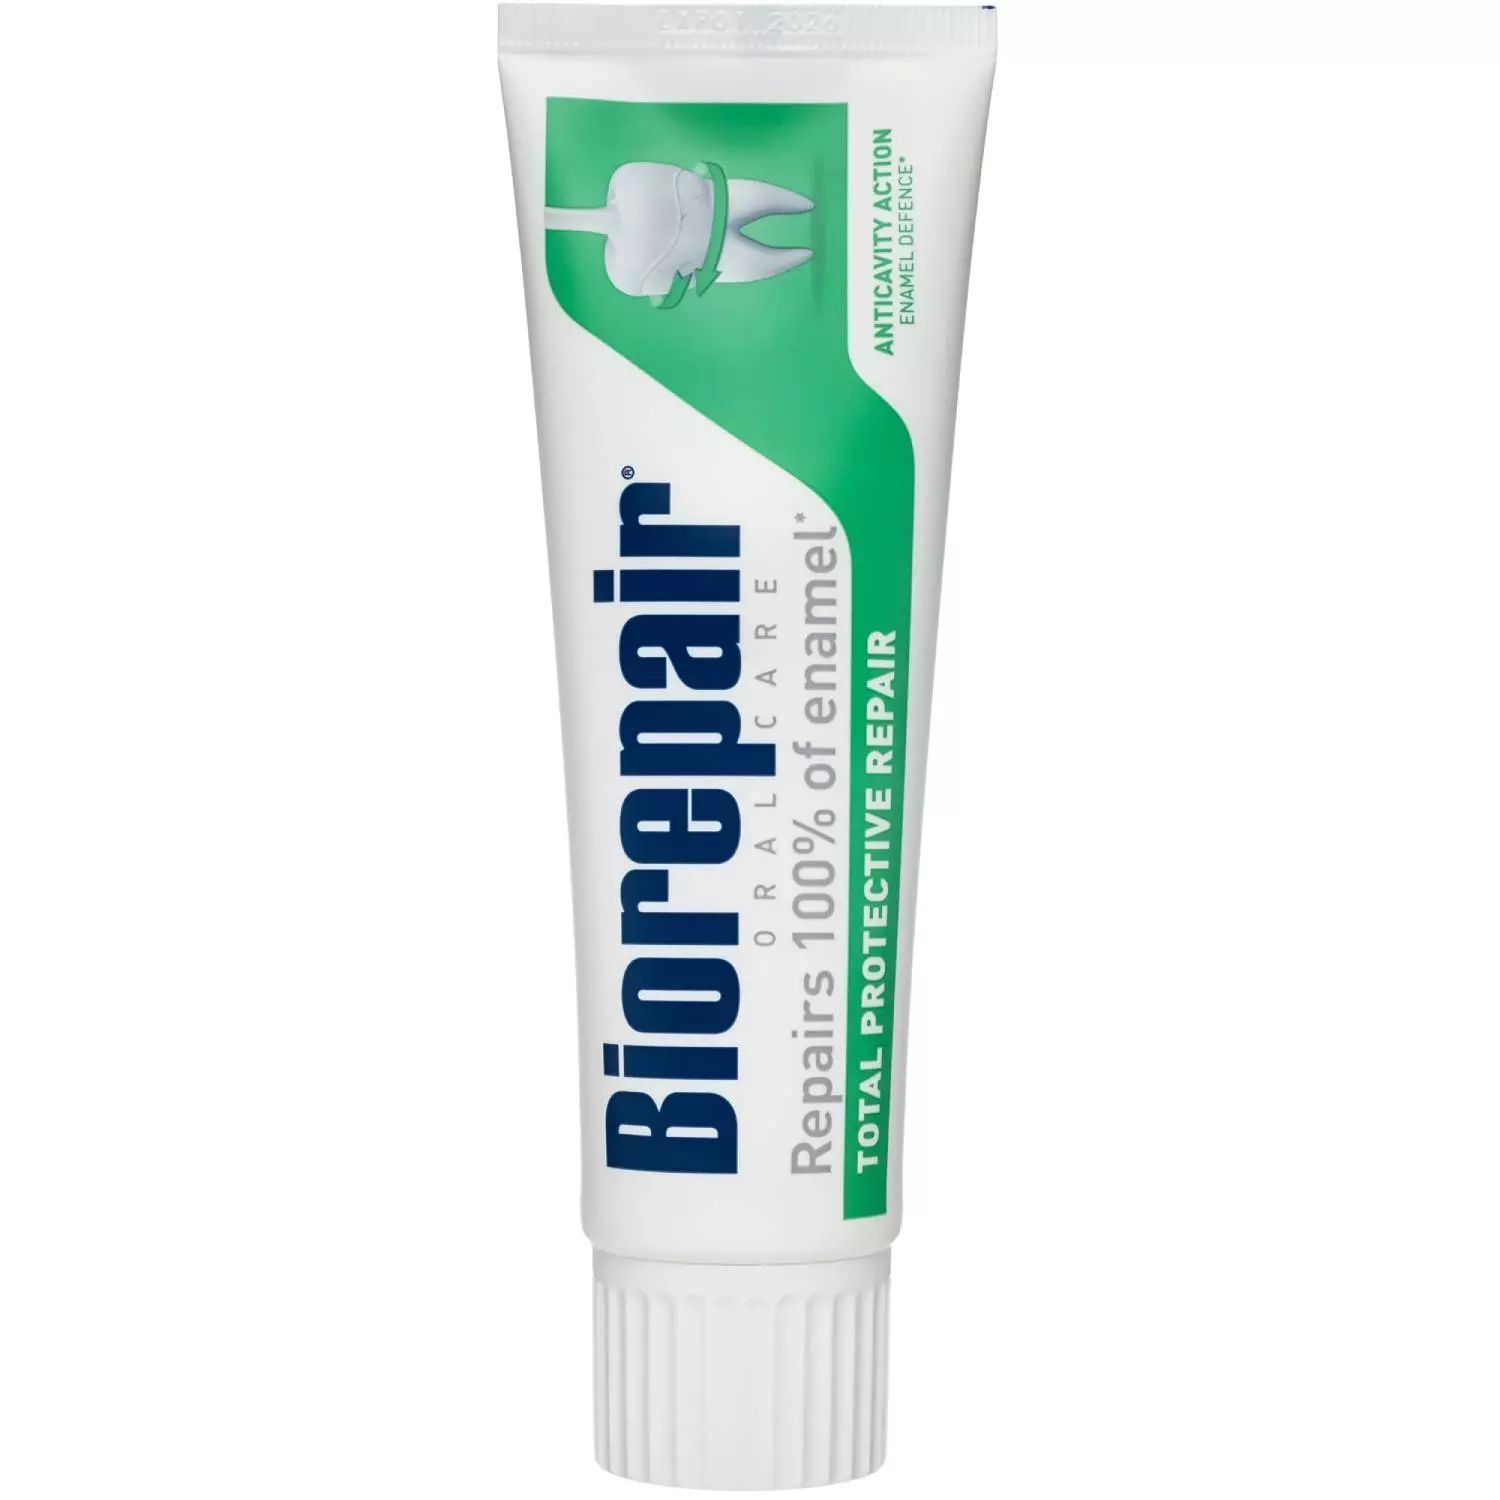 Зубная паста Biorepair Total Protective Repair 75 мл паста зубная комплексная защита total protective repair biorepair биорепэйр 75мл